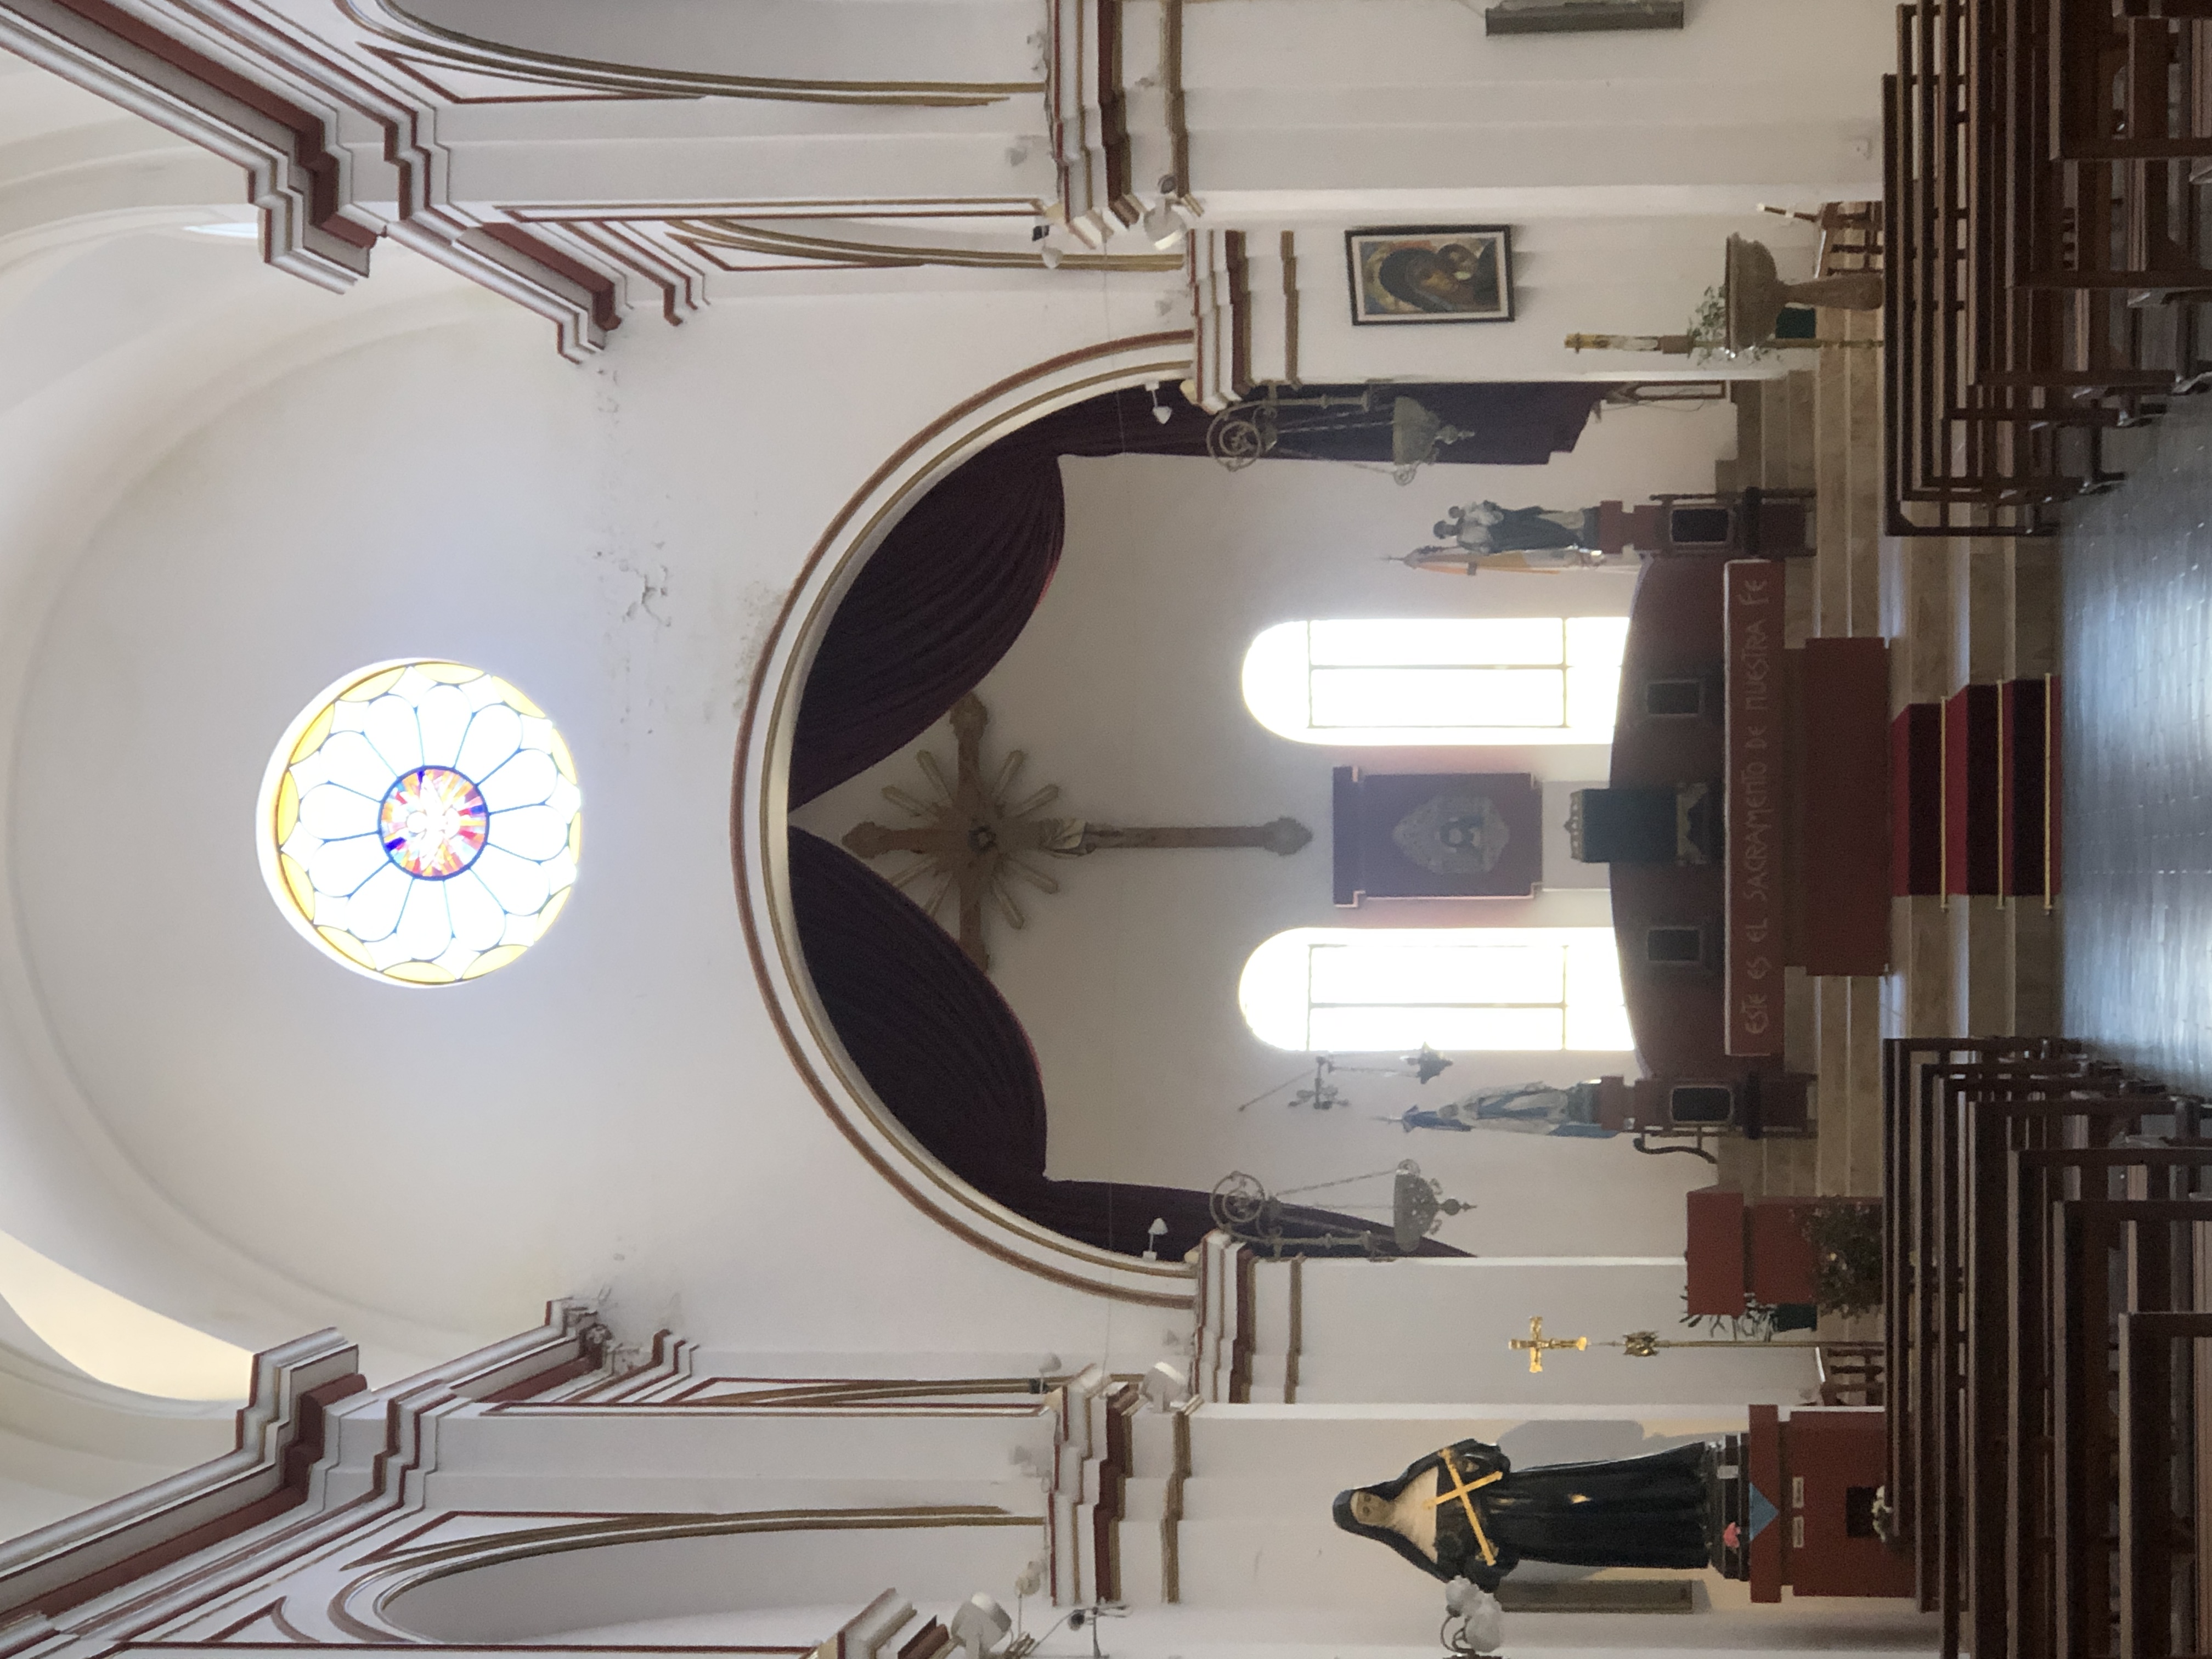 Nave y altar de la Iglesia de Santa Rita de Cascia